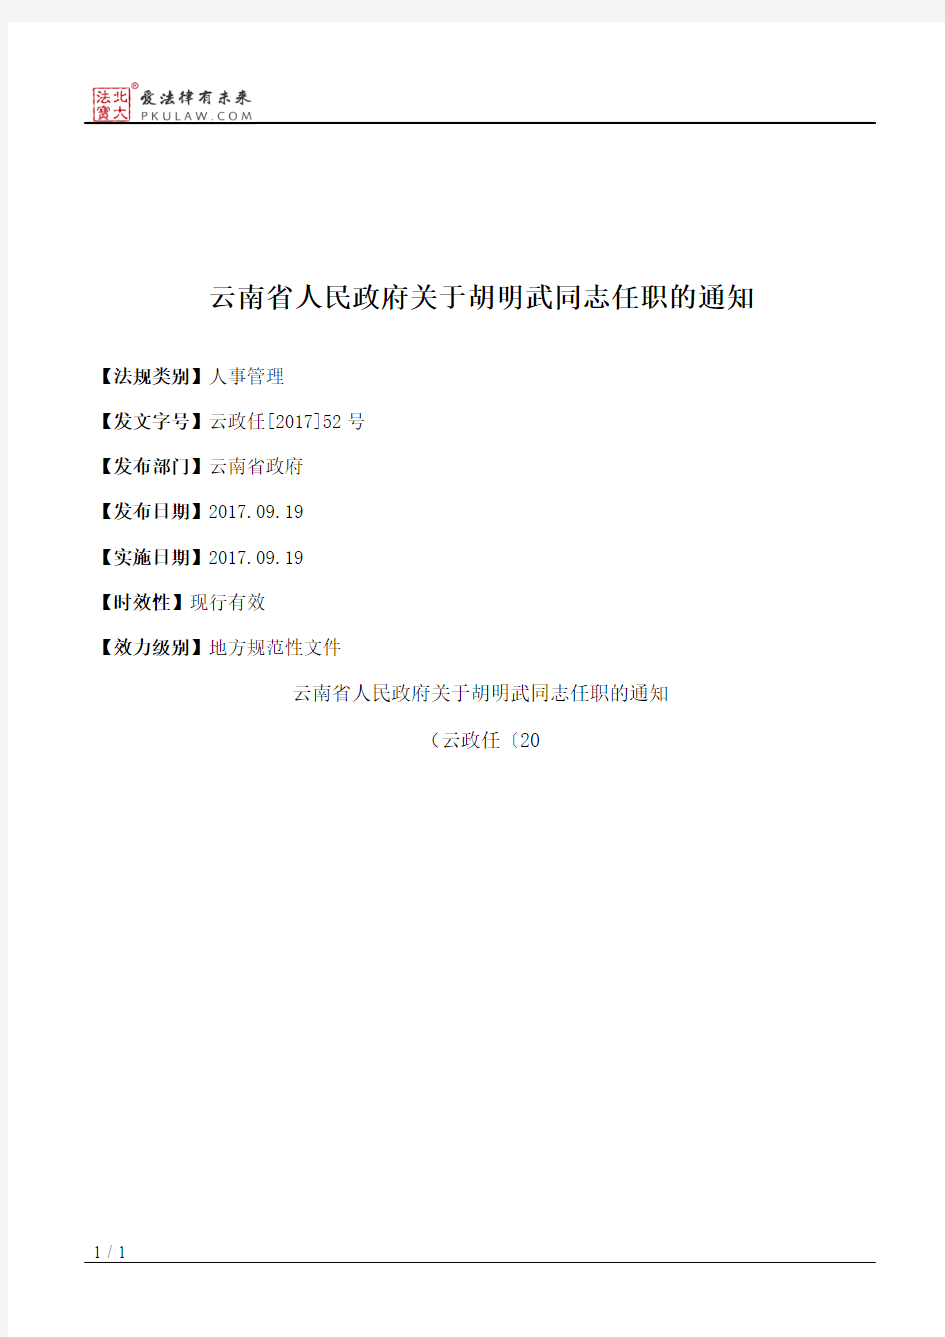 云南省人民政府关于胡明武同志任职的通知